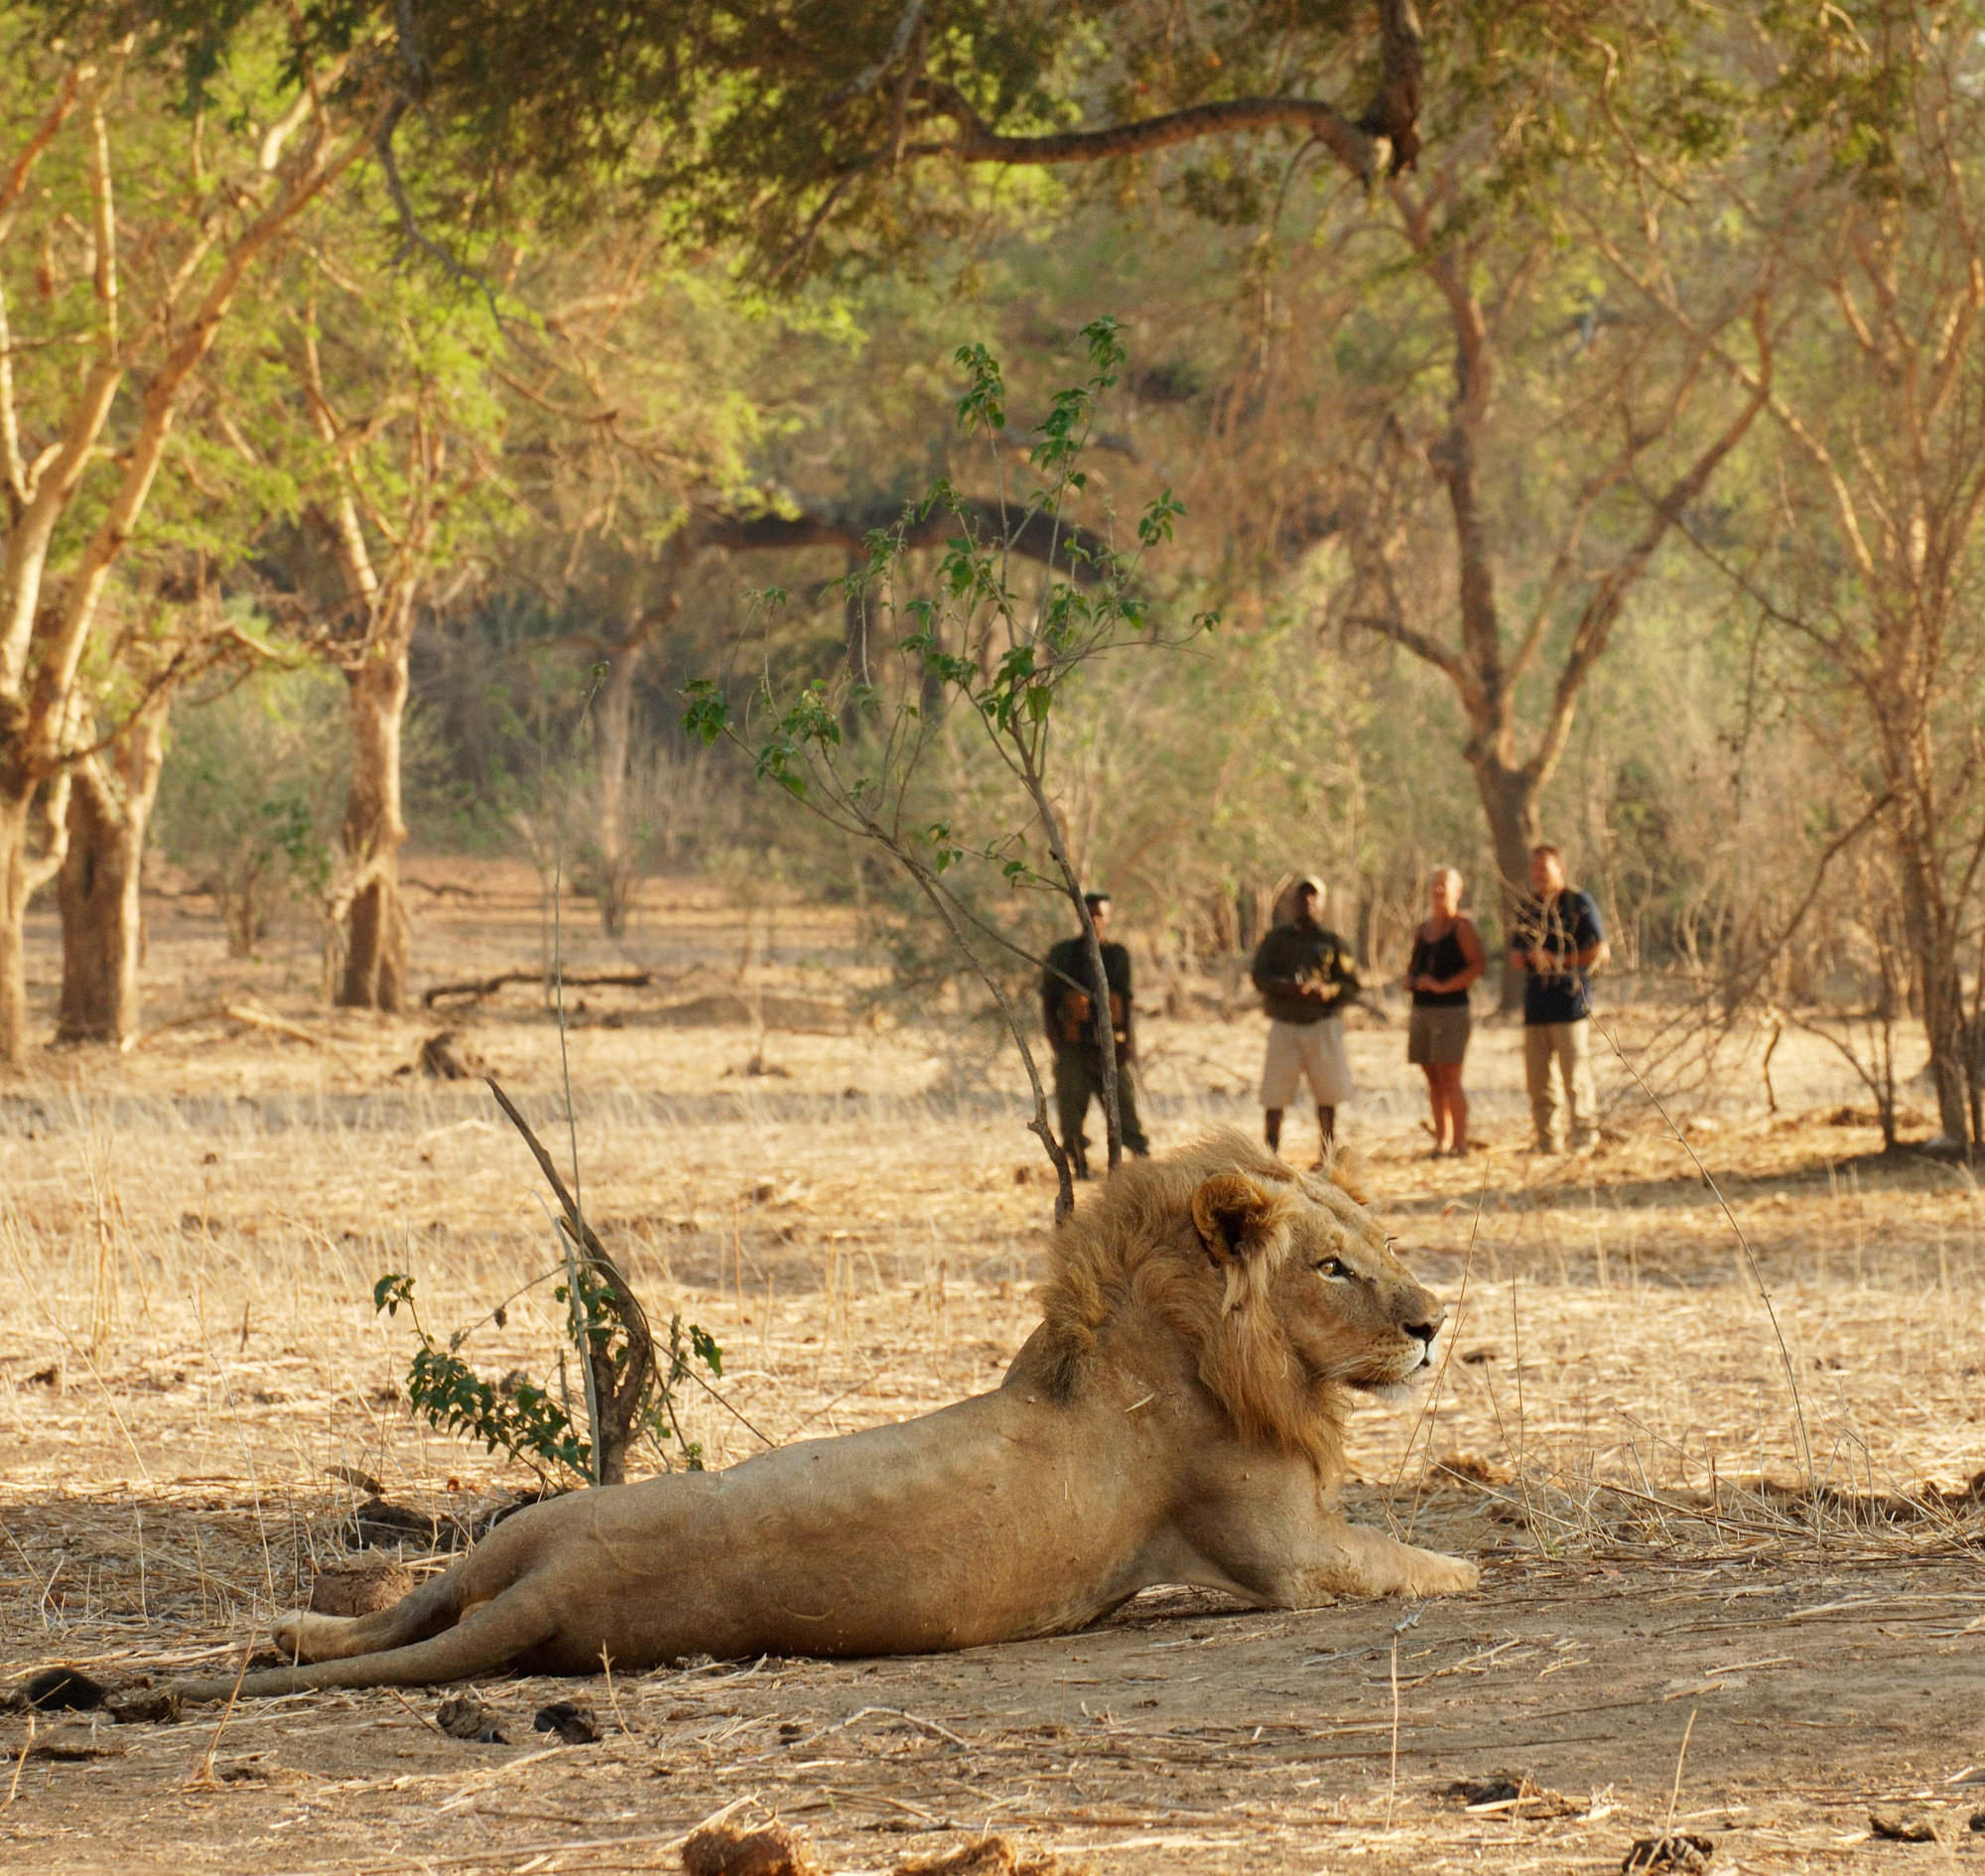 zambian resident safaris